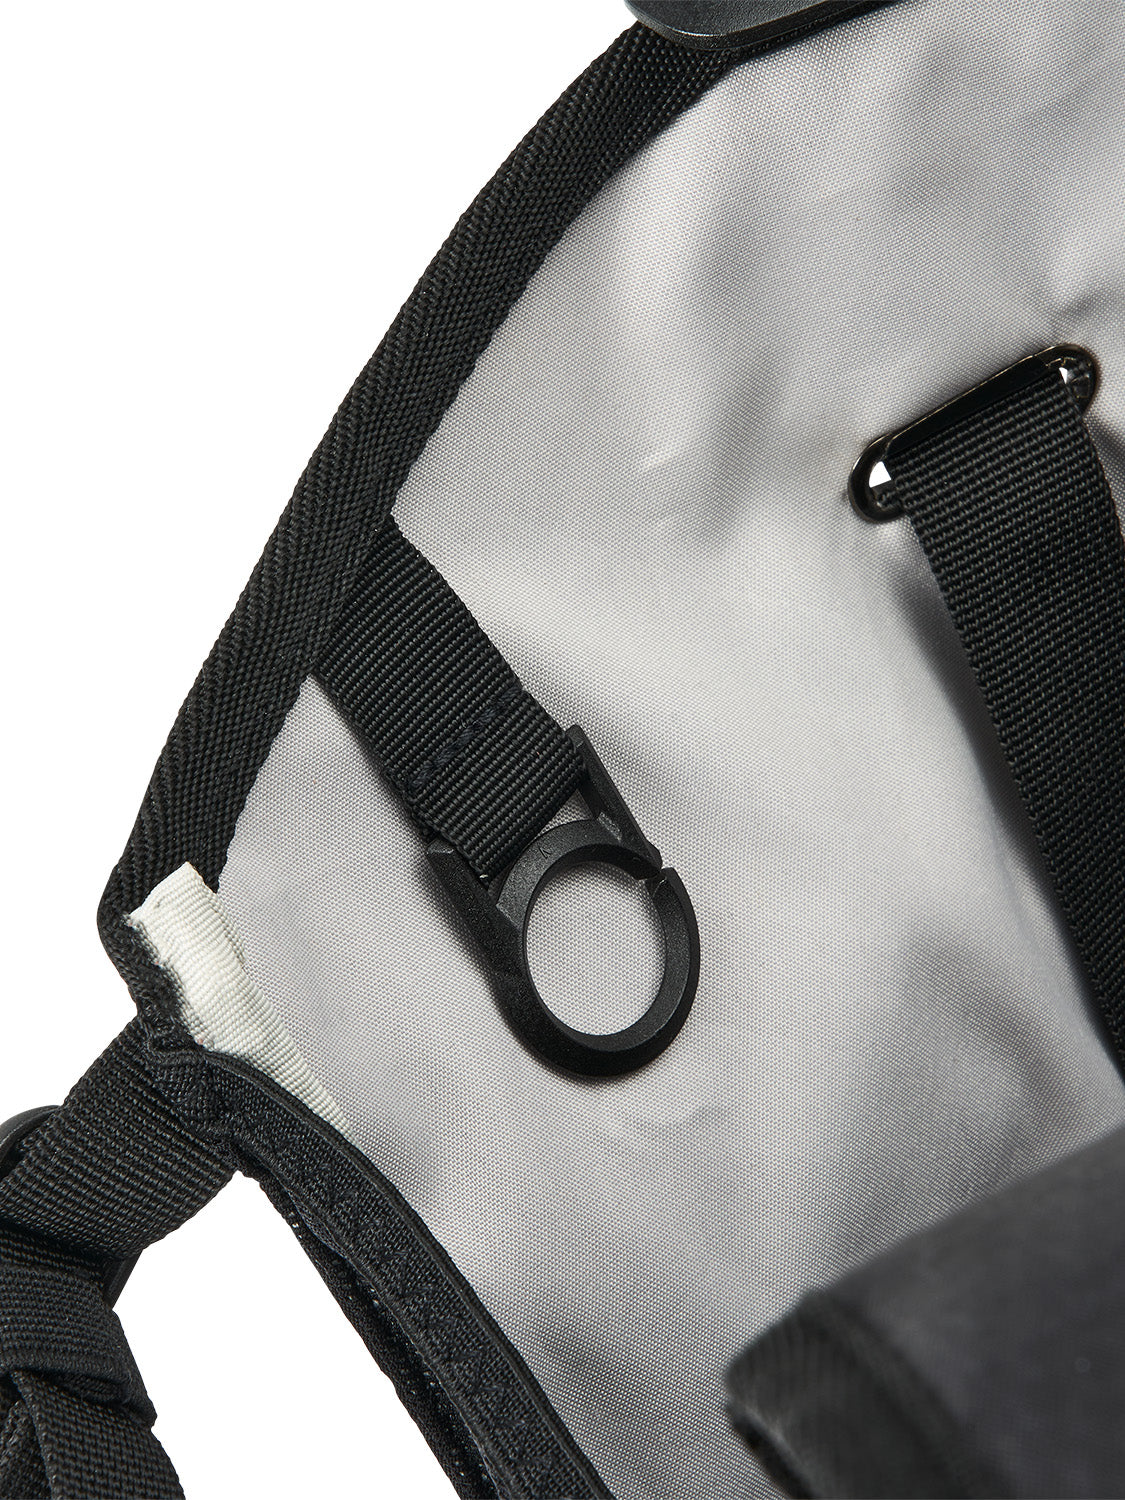 AEVOR-backpack-Rollpack-Proof-Black-detail